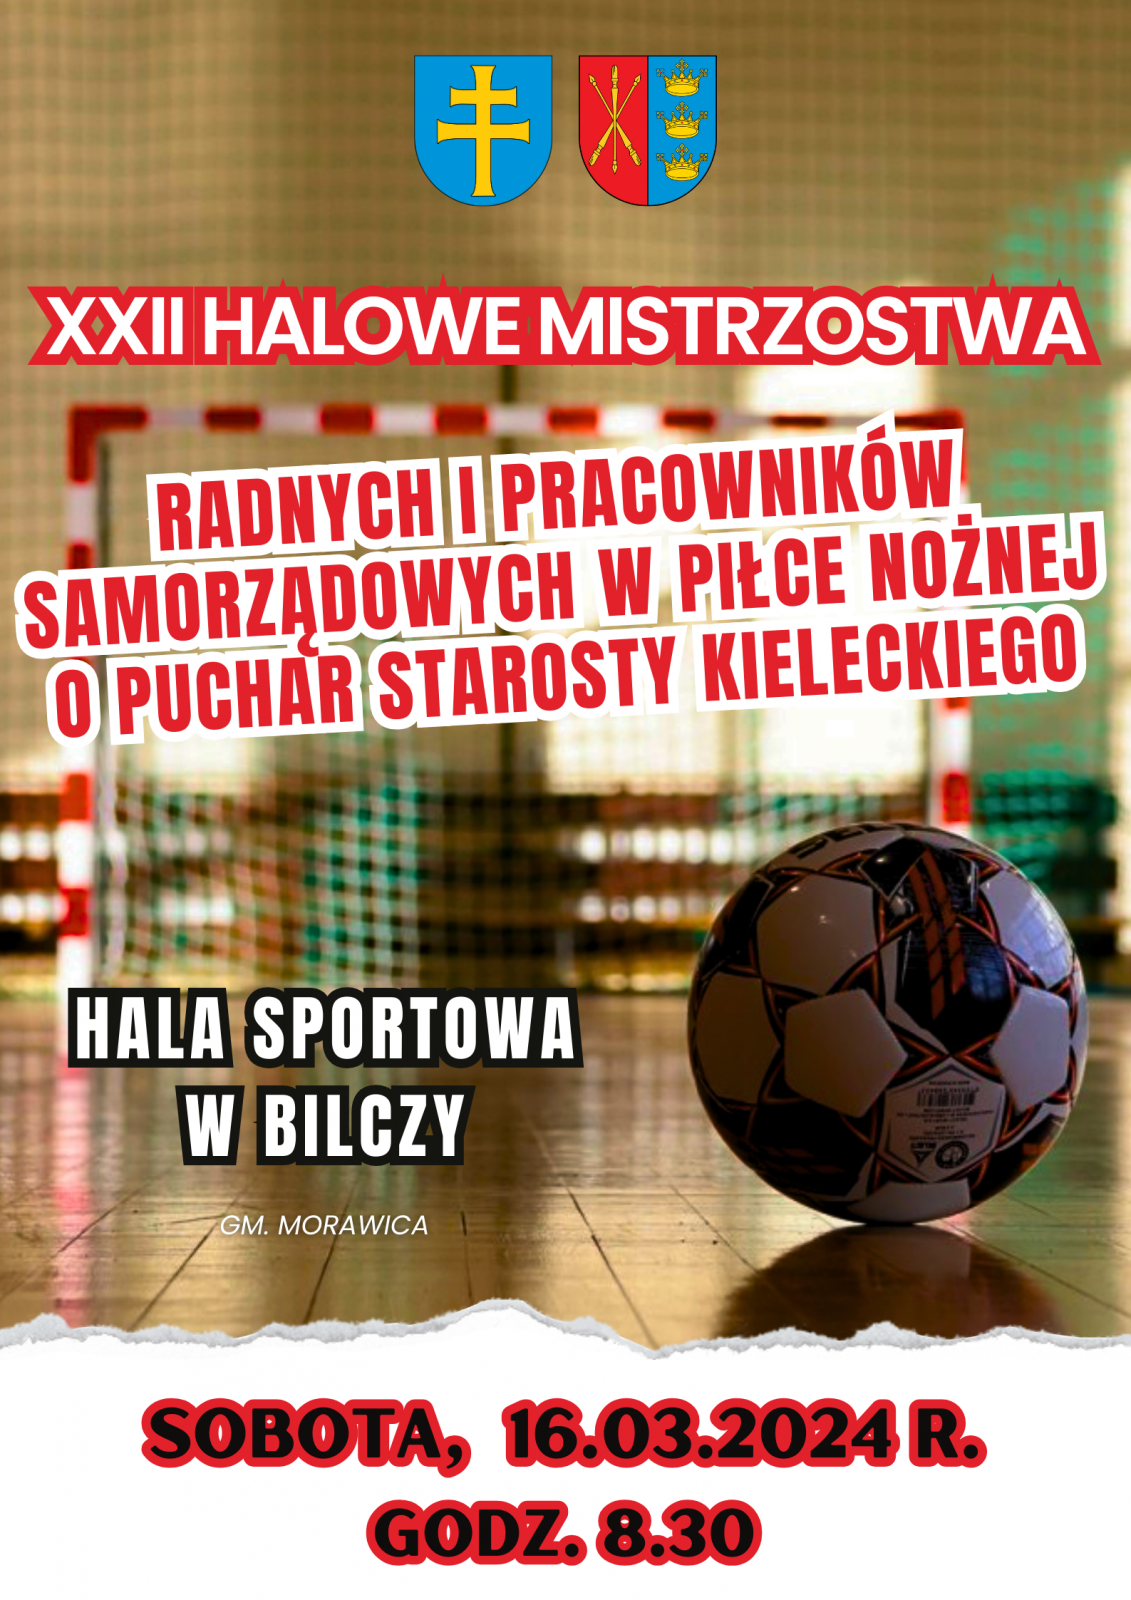 XXII Halowe Mistrzostwa Radnych i Pracowników Samorządowych w Piłce Nożnej o Puchar Starosty Kieleckiego